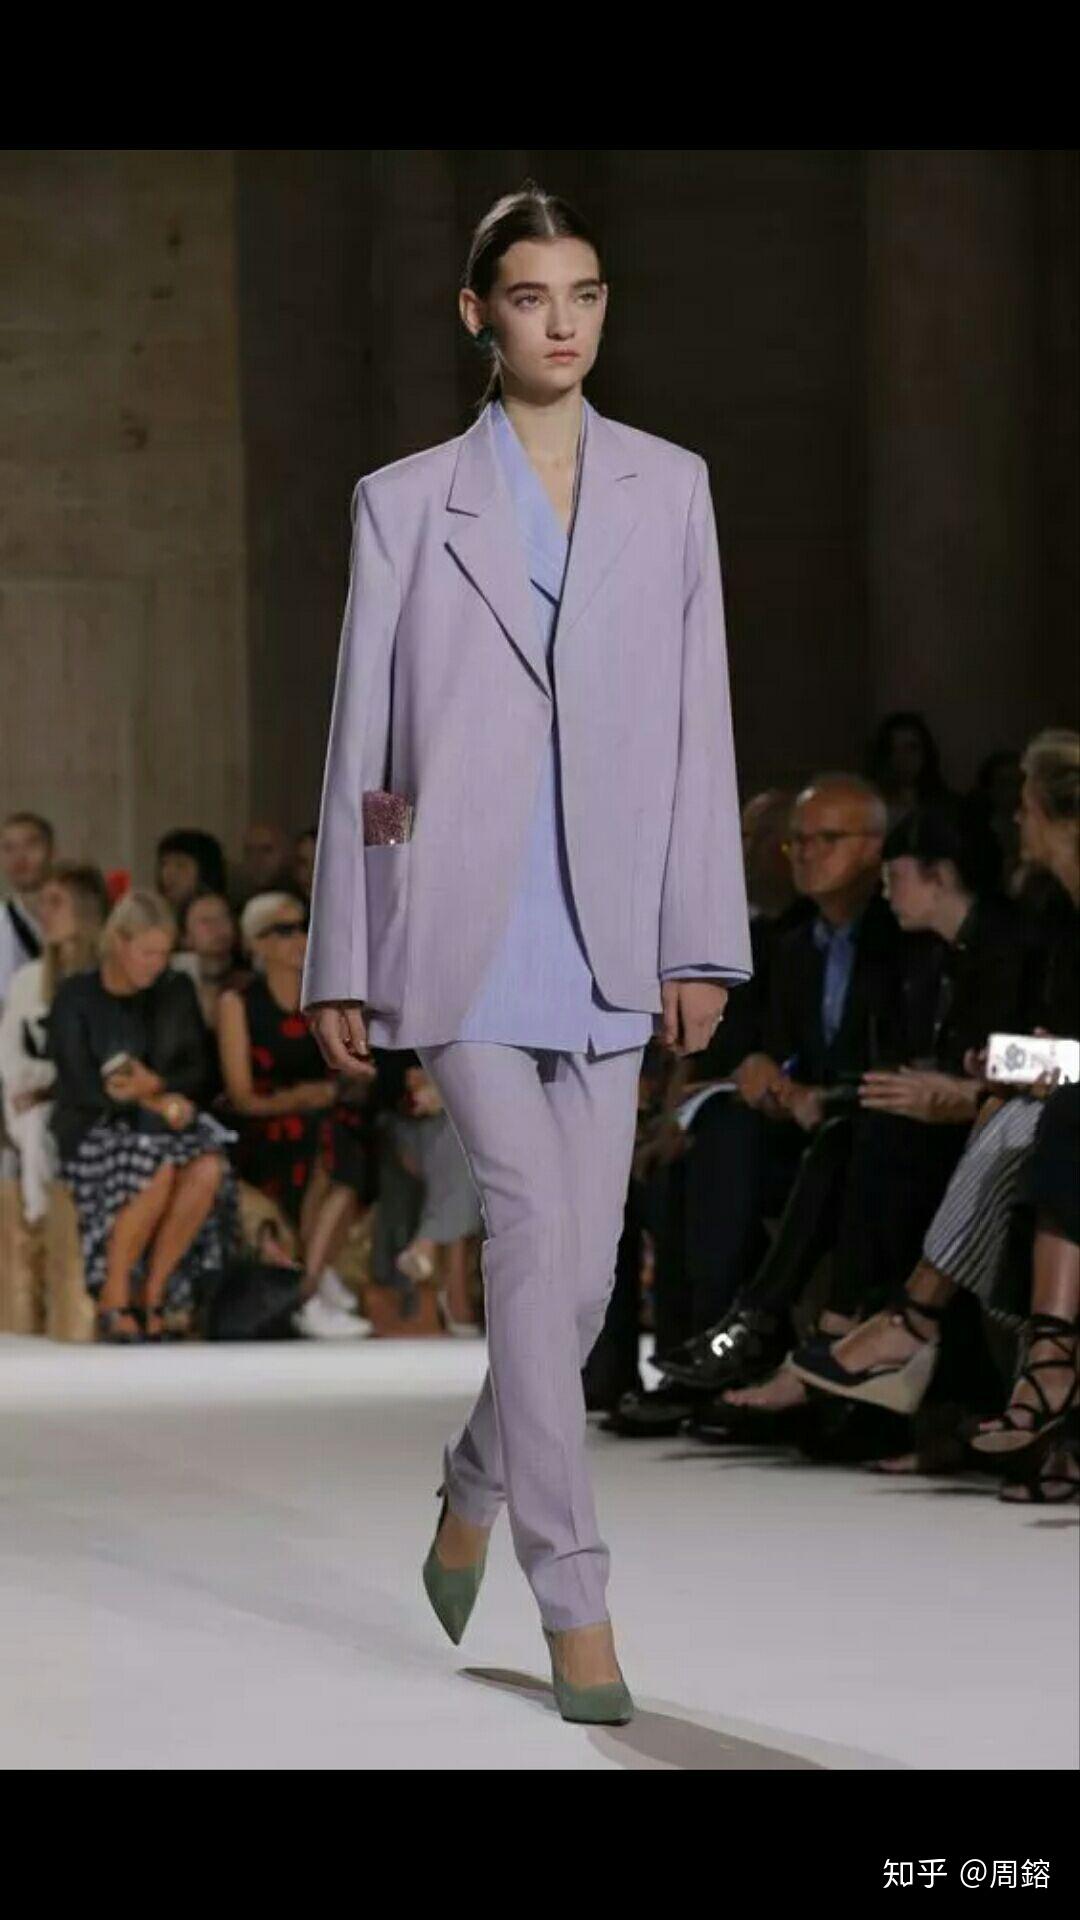 浅紫色的吊带裙应该搭配什么颜色的鞋子呀?